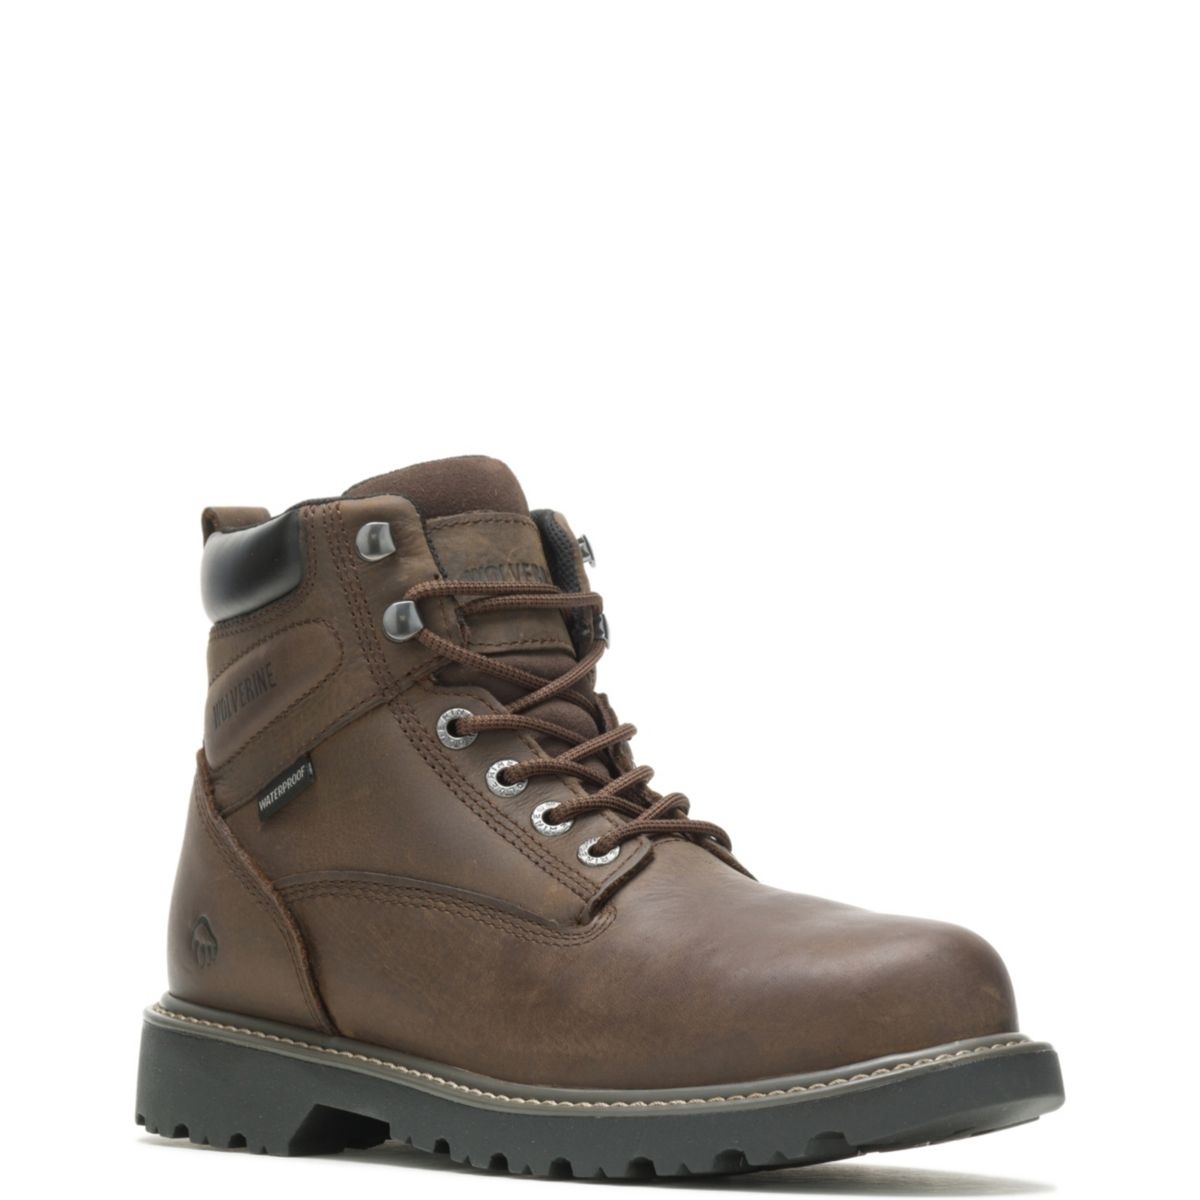 WOLVERINE Men's Floorhand 6 Waterproof Steel Toe Work Boot Dark Brown - W10633 DARK BROWN - DARK BROWN, 12 X-Wide